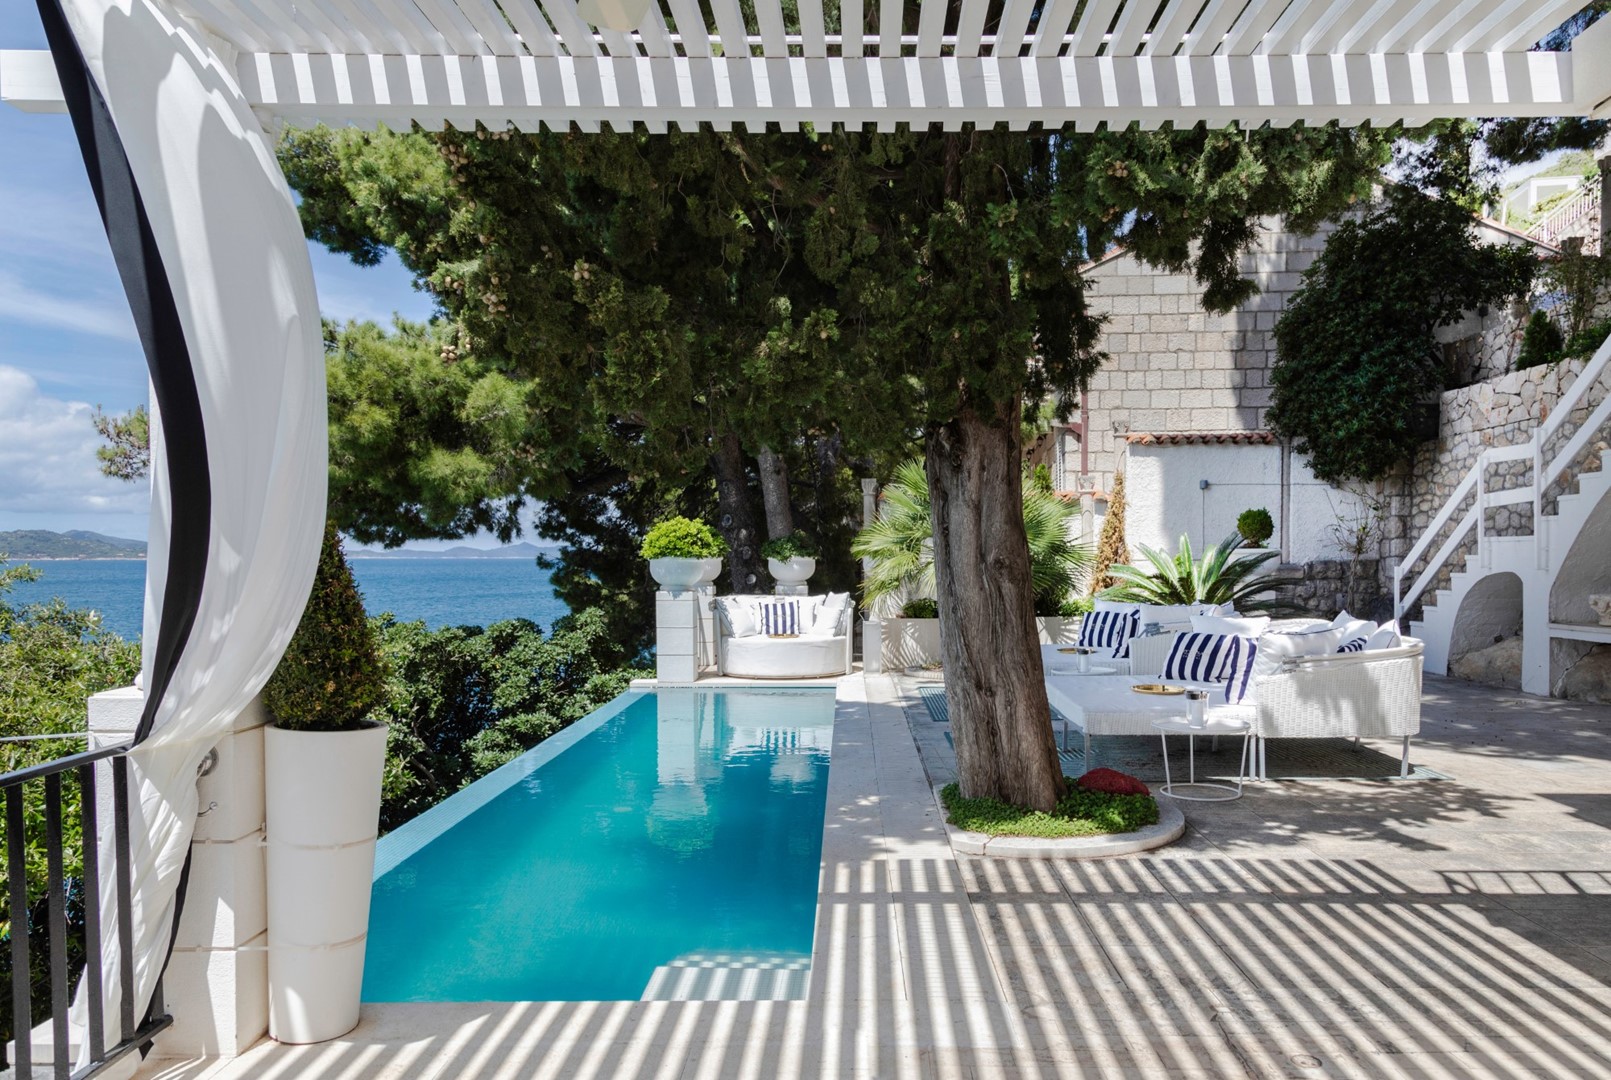 Terrasse der Kroatien luxuriösen Strandvilla mit Esstisch und Sitzbereich am Pool